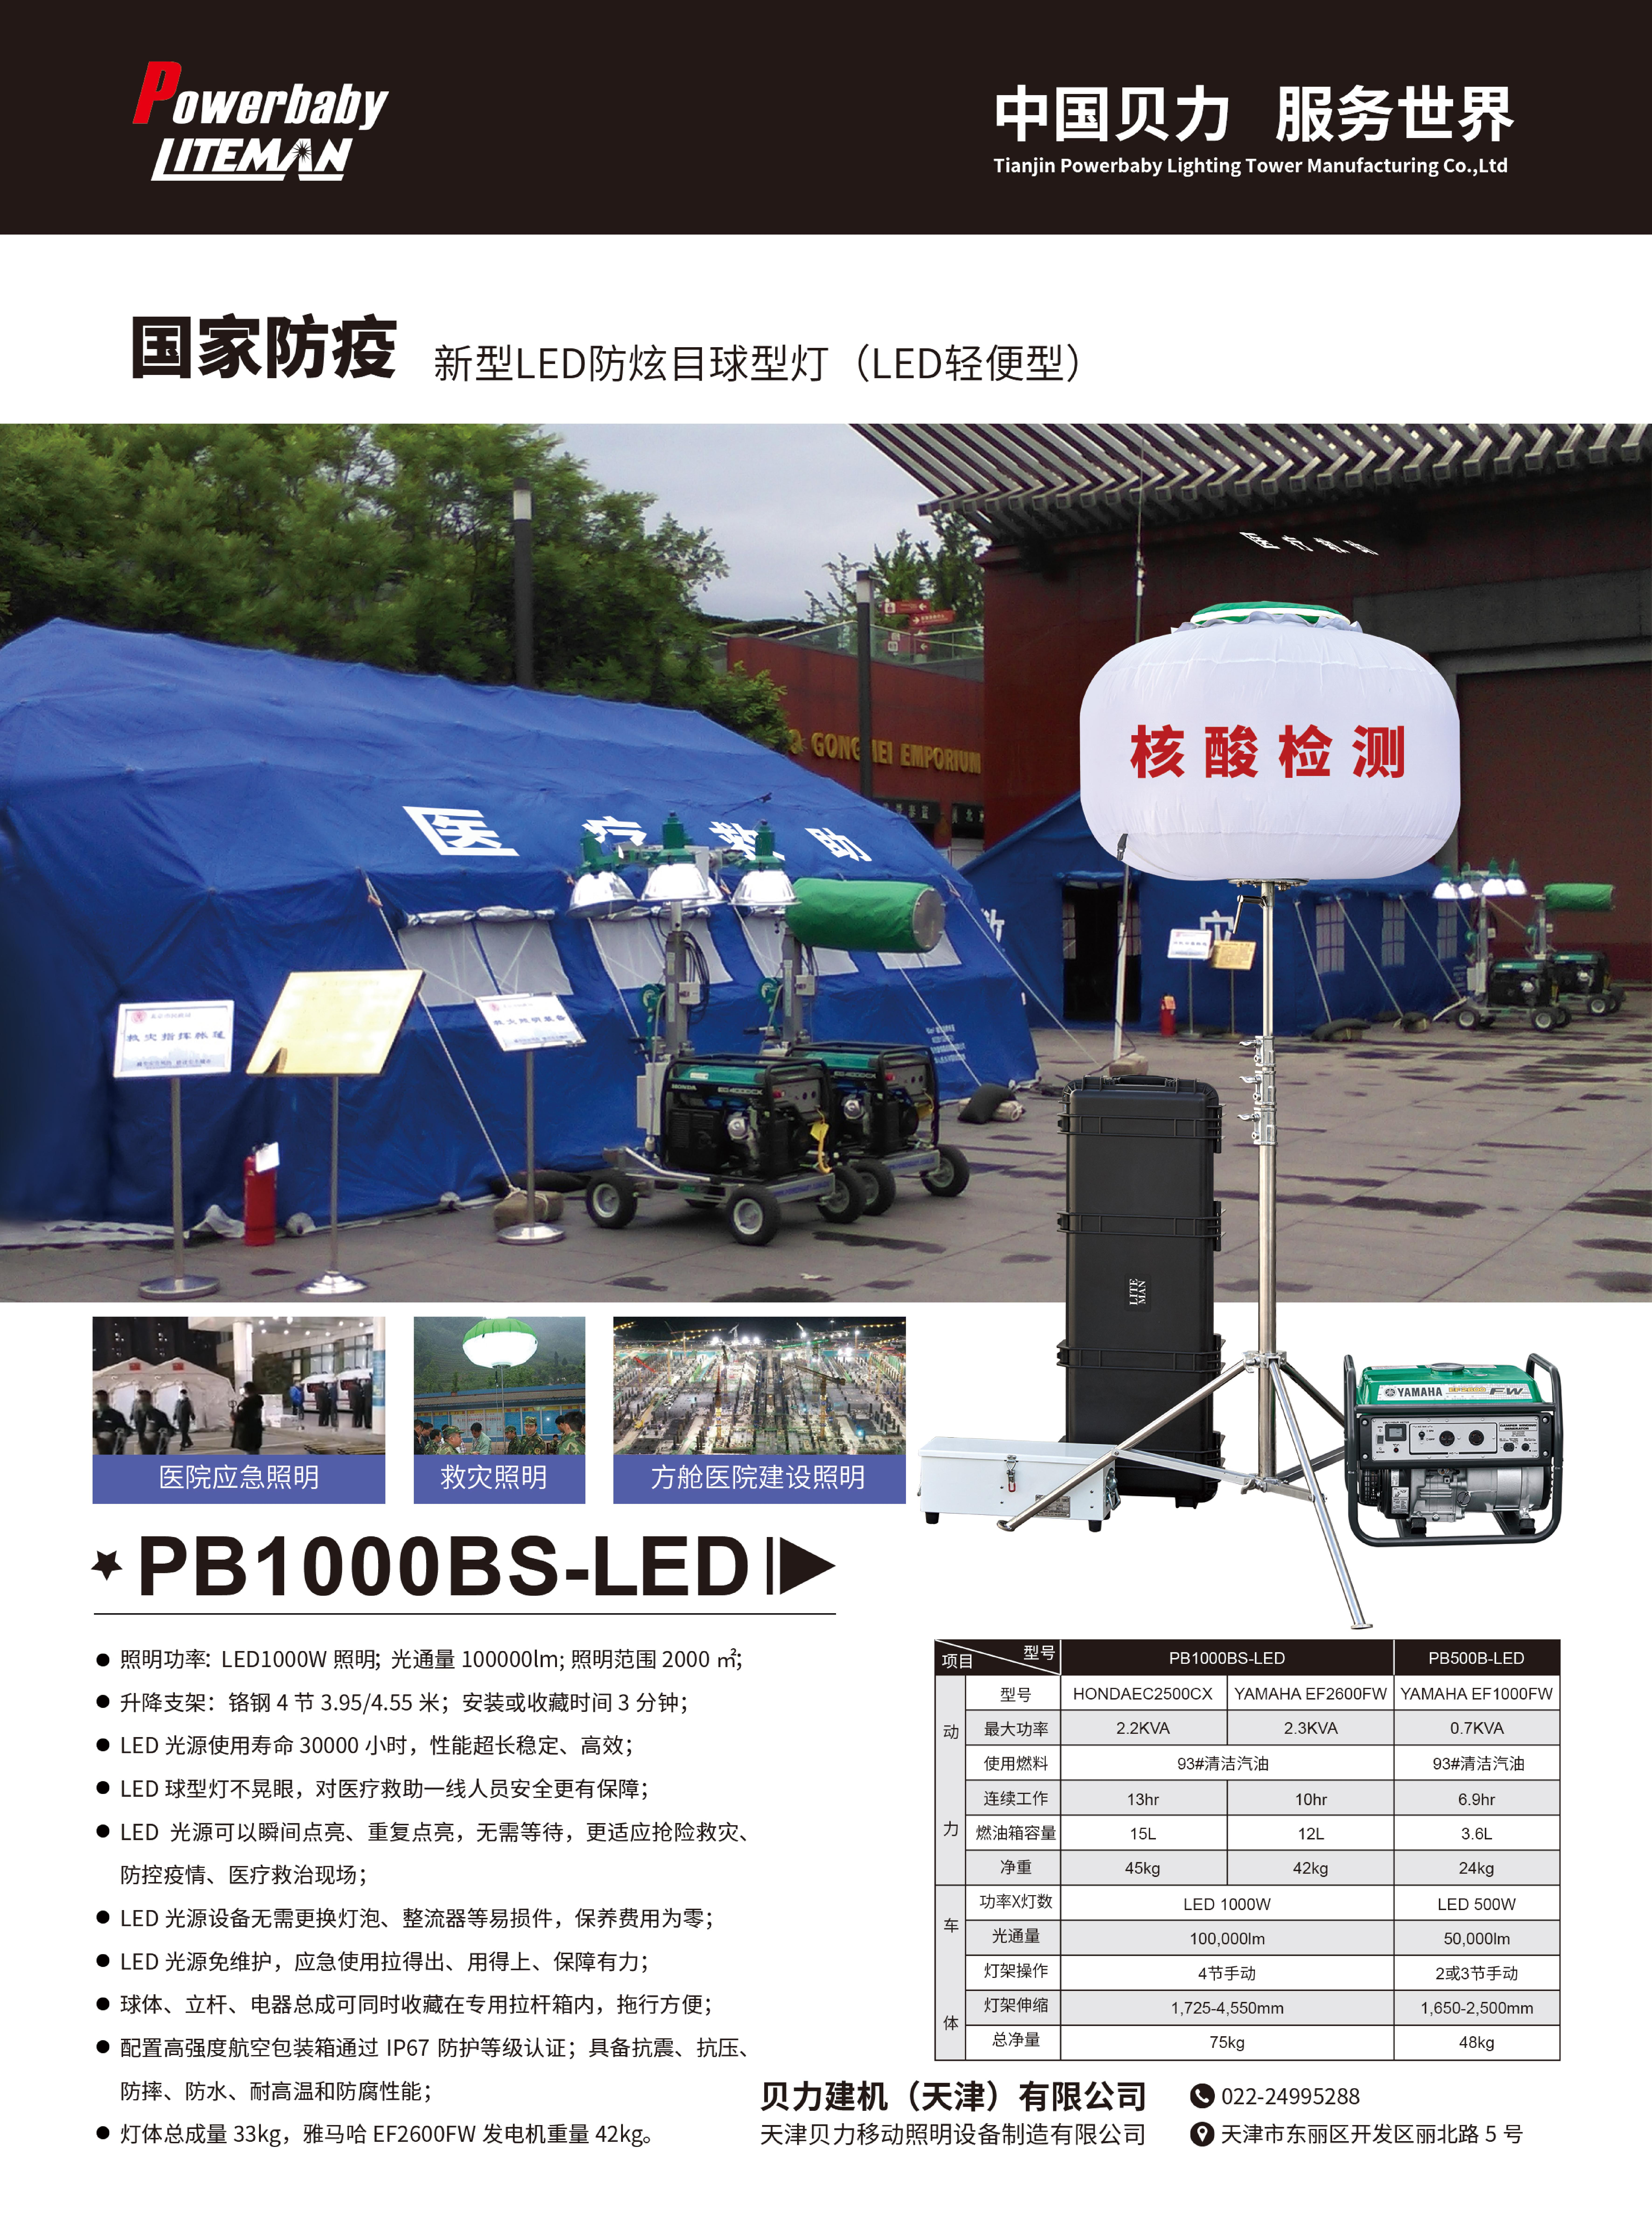 PB500B-LED_1.jpg